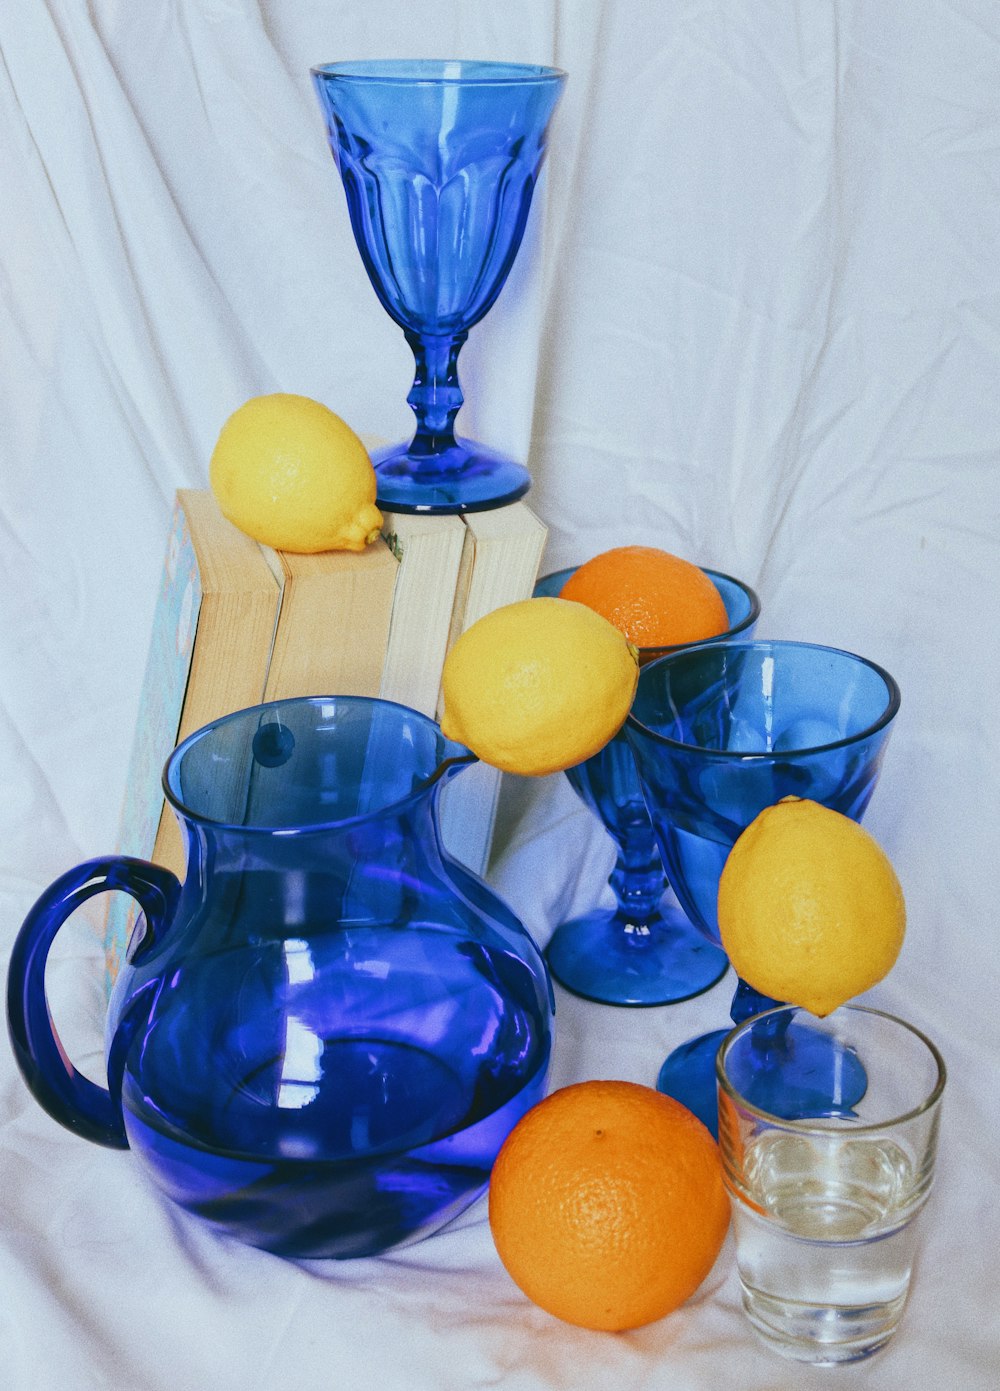 Pichet en verre bleu avec des fruits citronnés